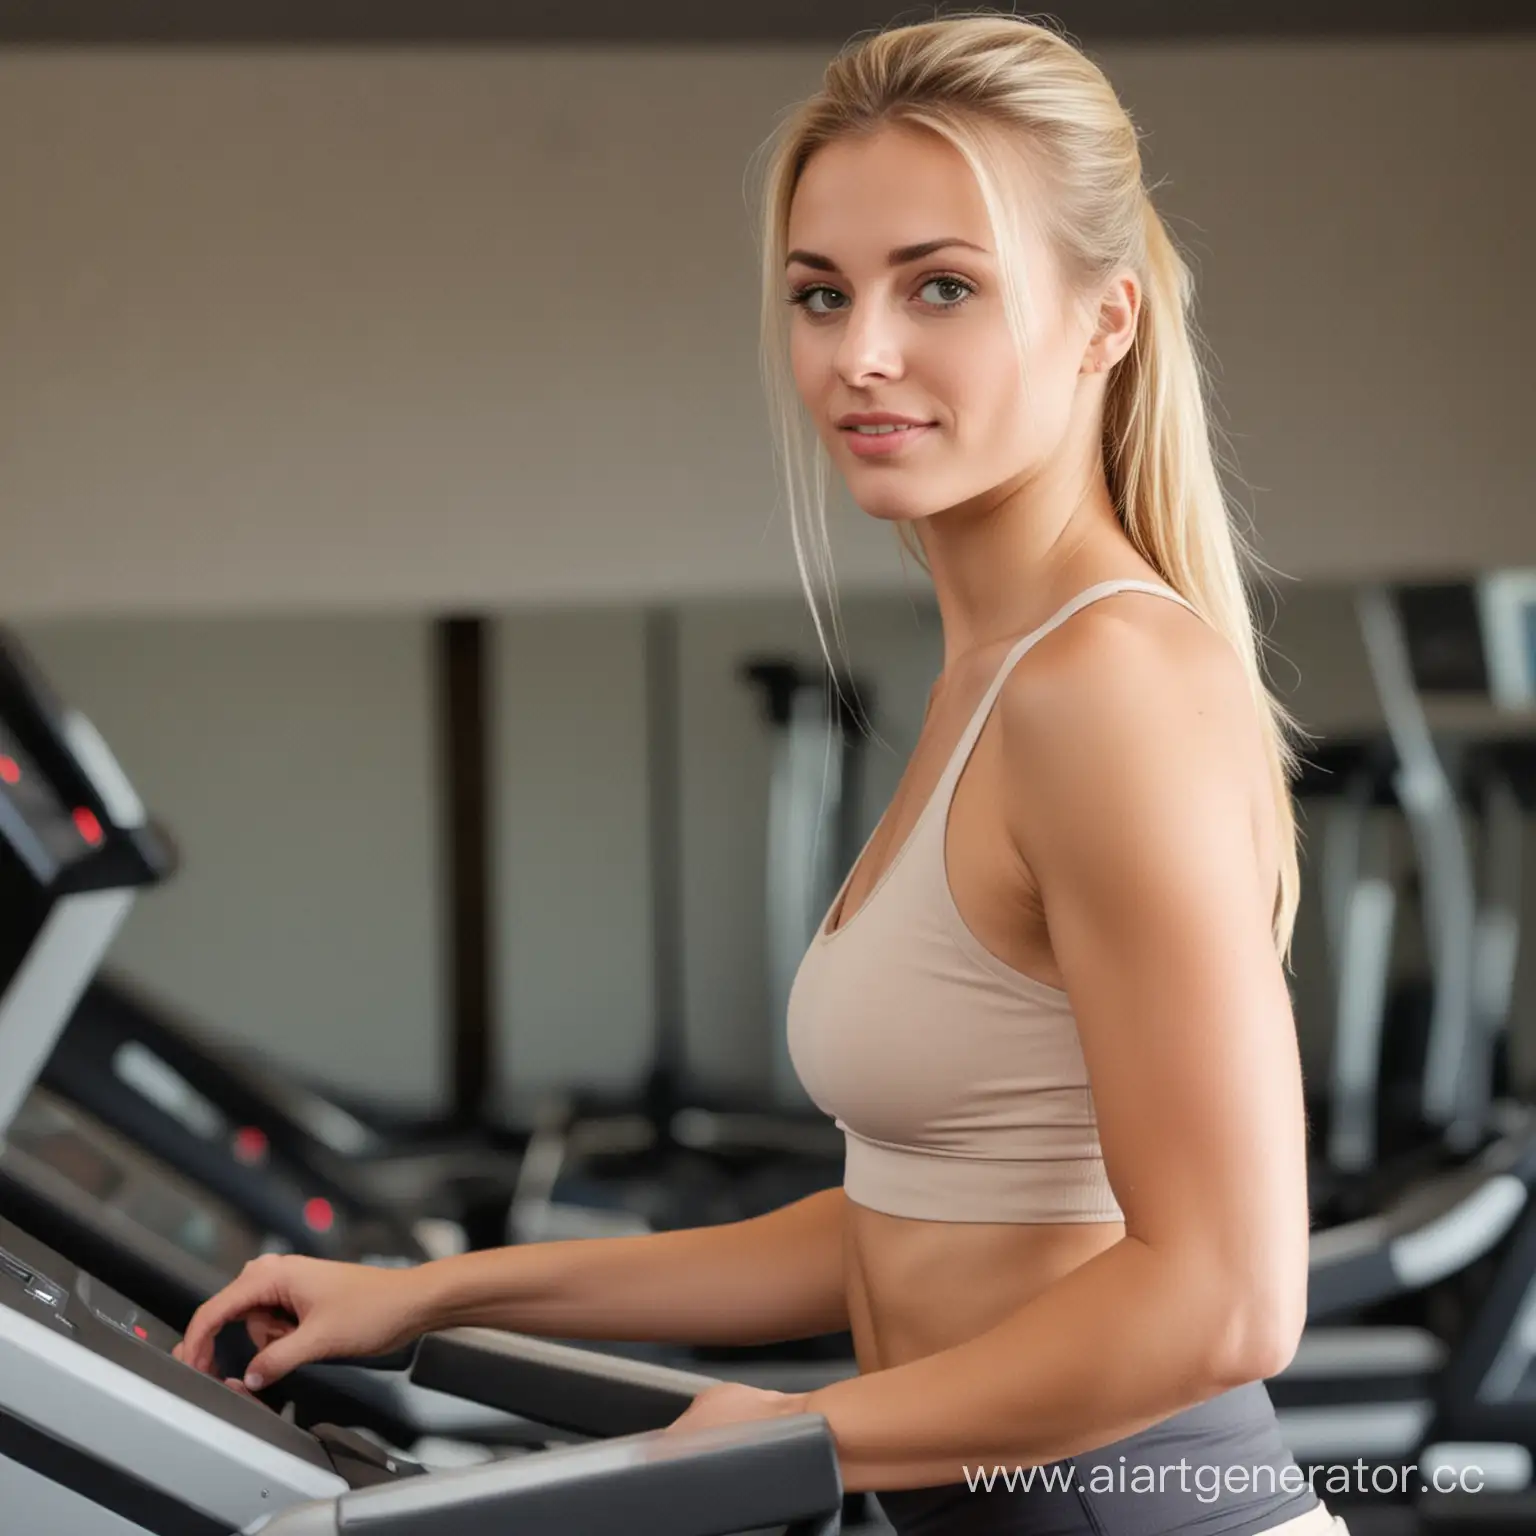 Blonde-Girl-Exercising-on-Treadmill-for-Fitness-Training